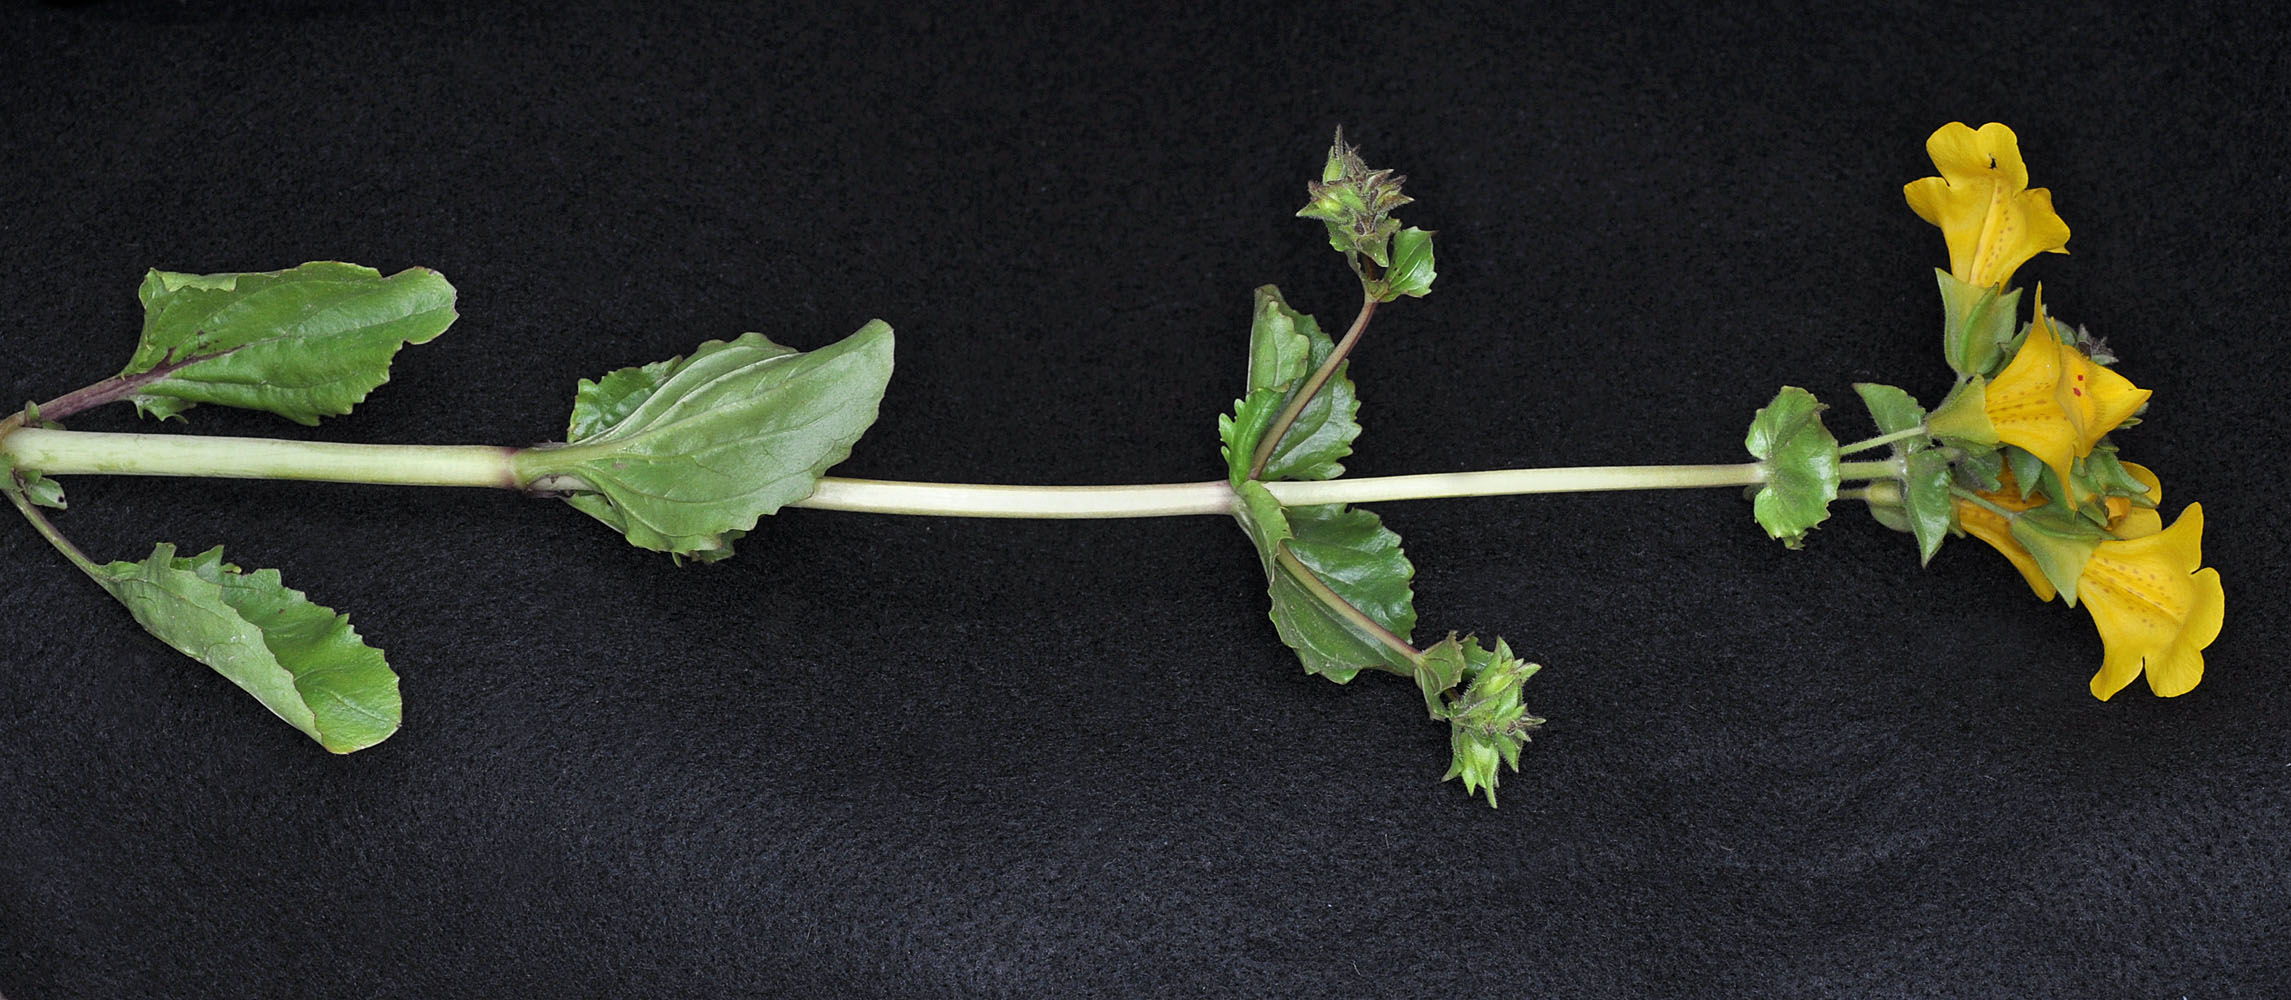 Flora of Eastern Washington Image: Erythranthe guttata